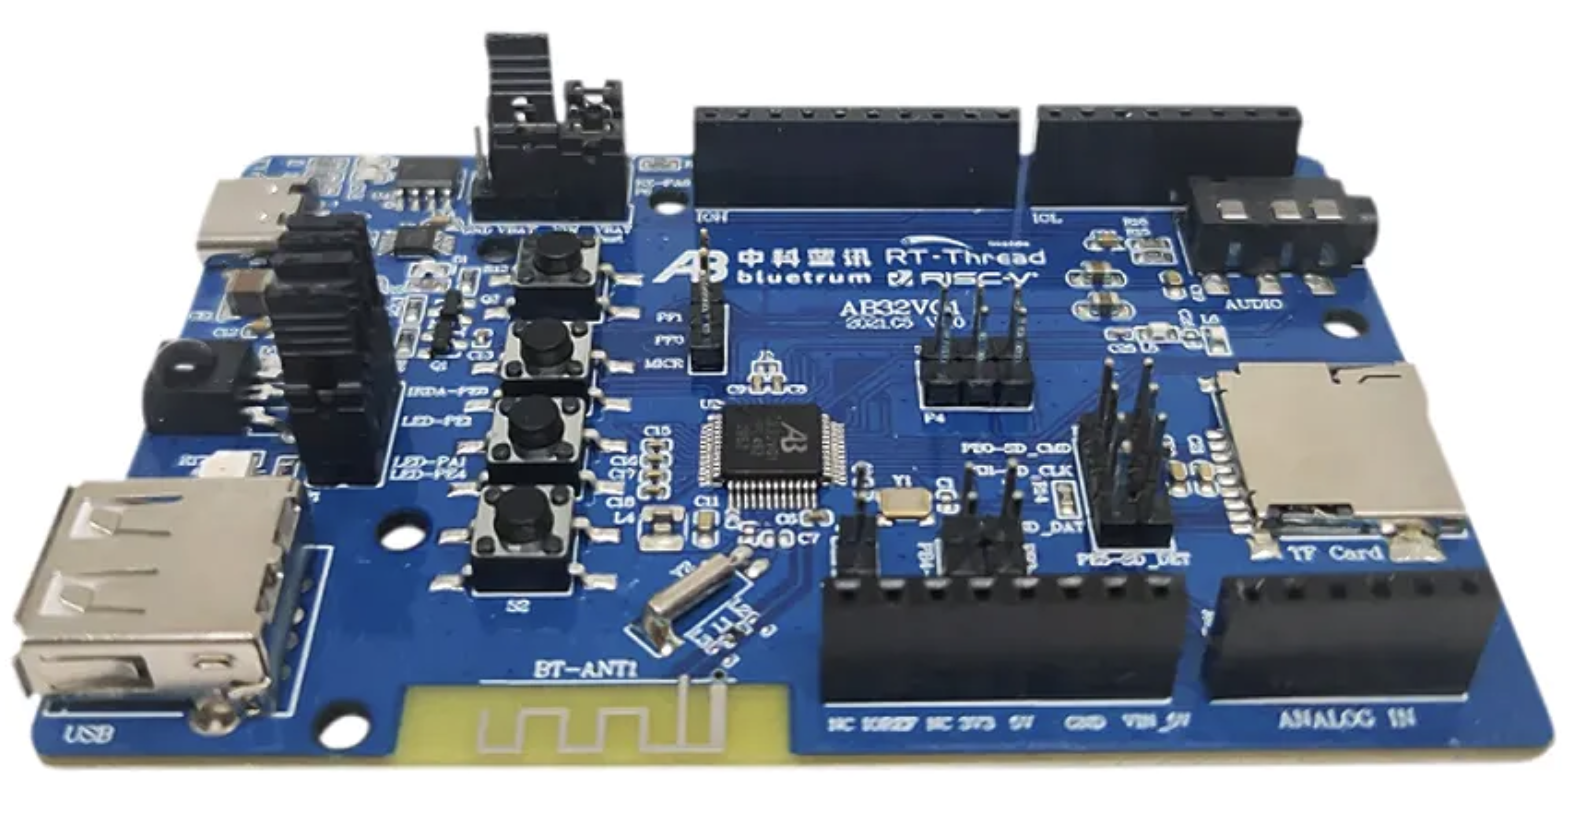 Bluetrum Launches RT-Thread-Based Arduino Uno-Like RISC-V Development Board, the AB32VG1 | Gareth Halfacree, hackster.io